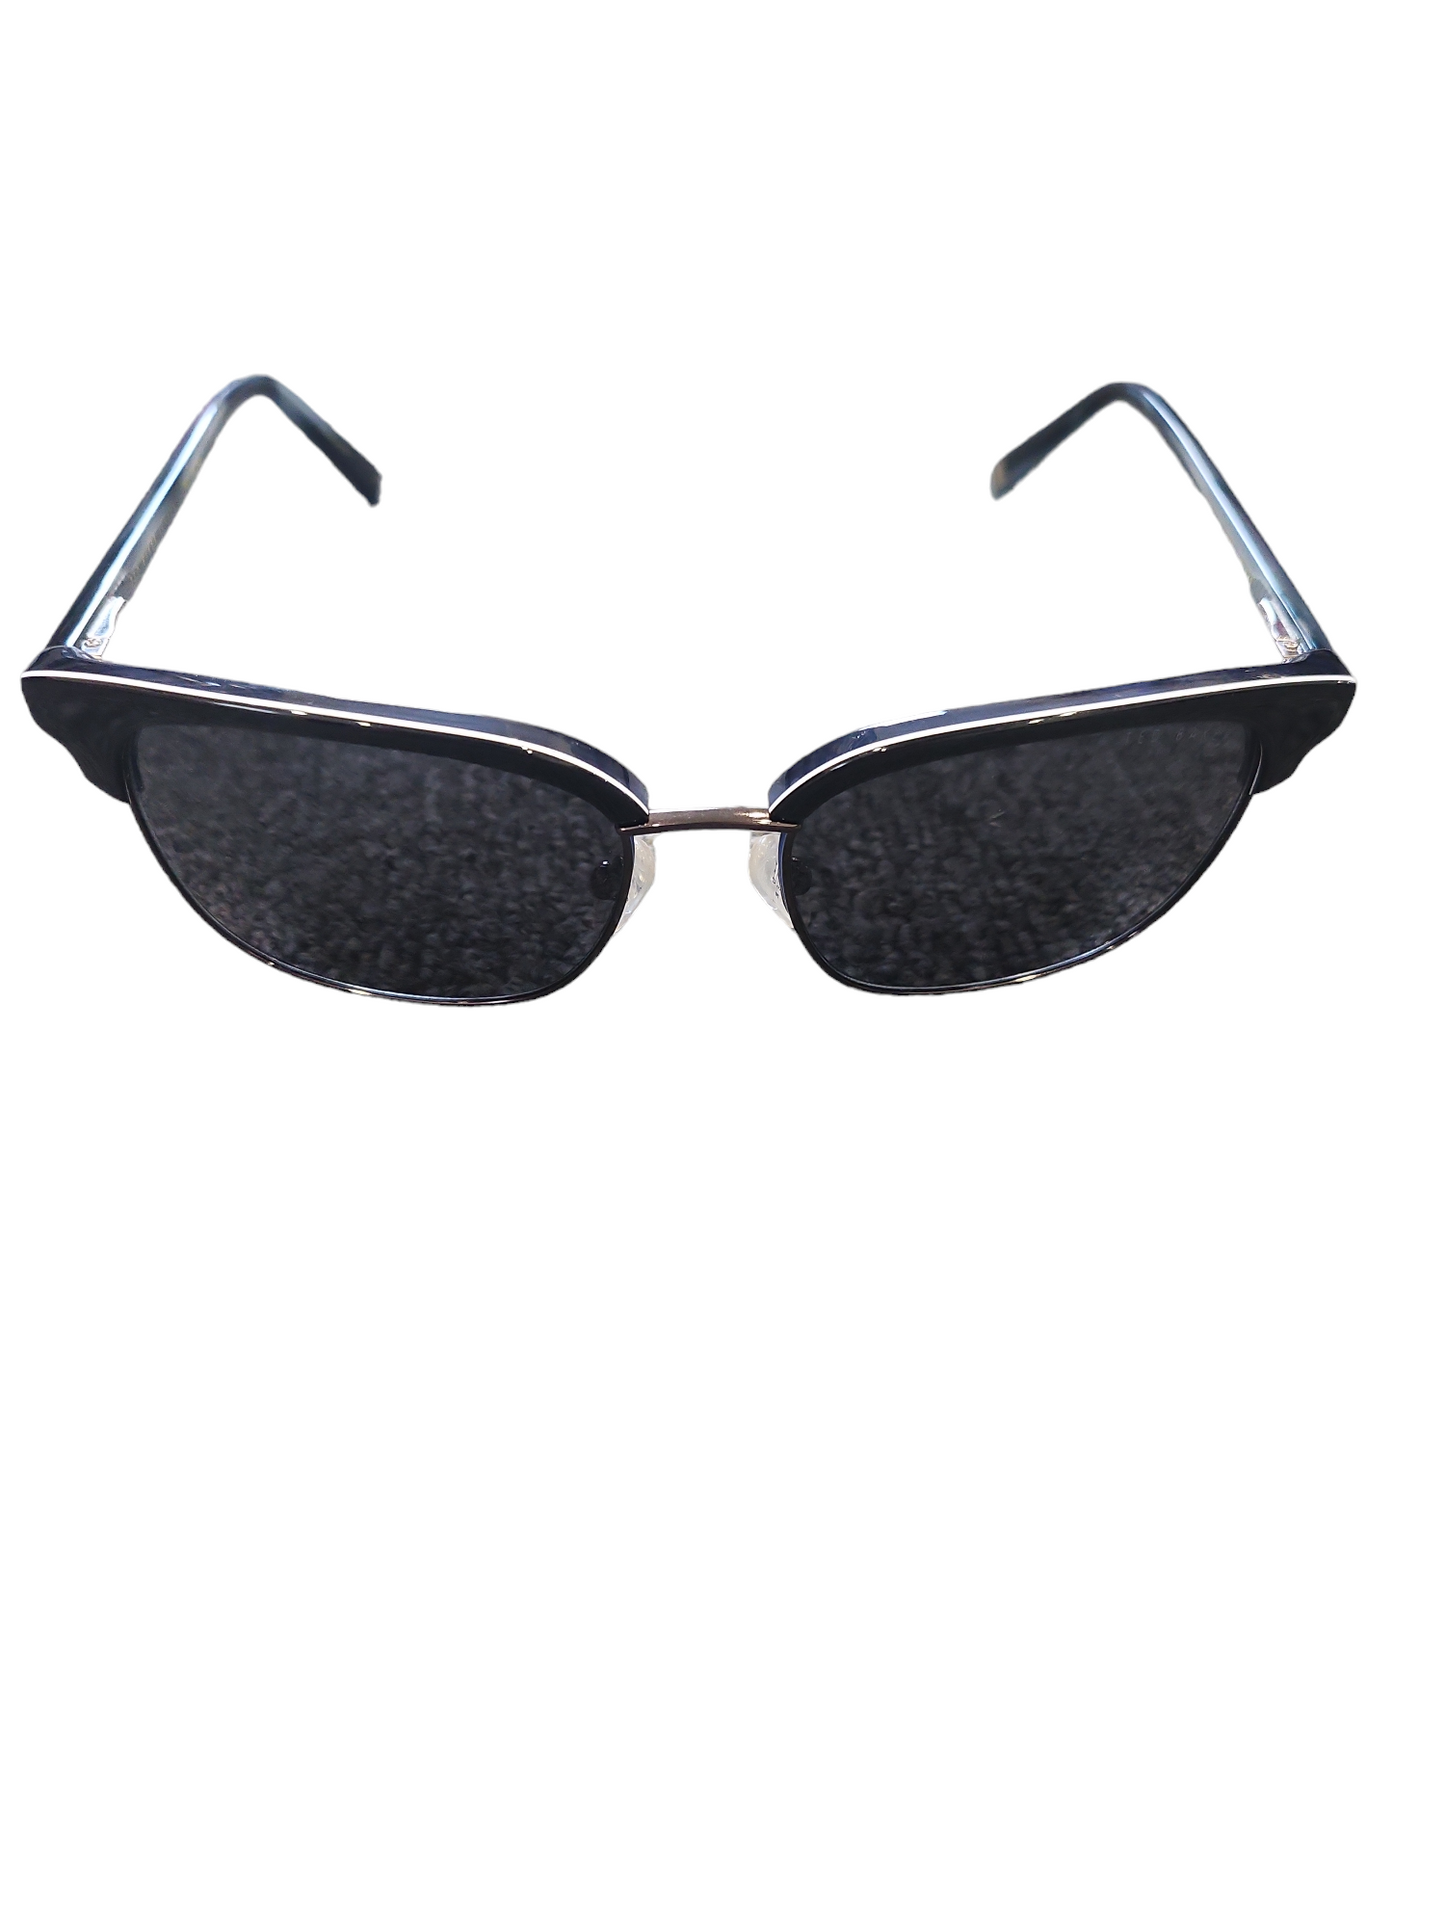 Ted Baker Sunglasses